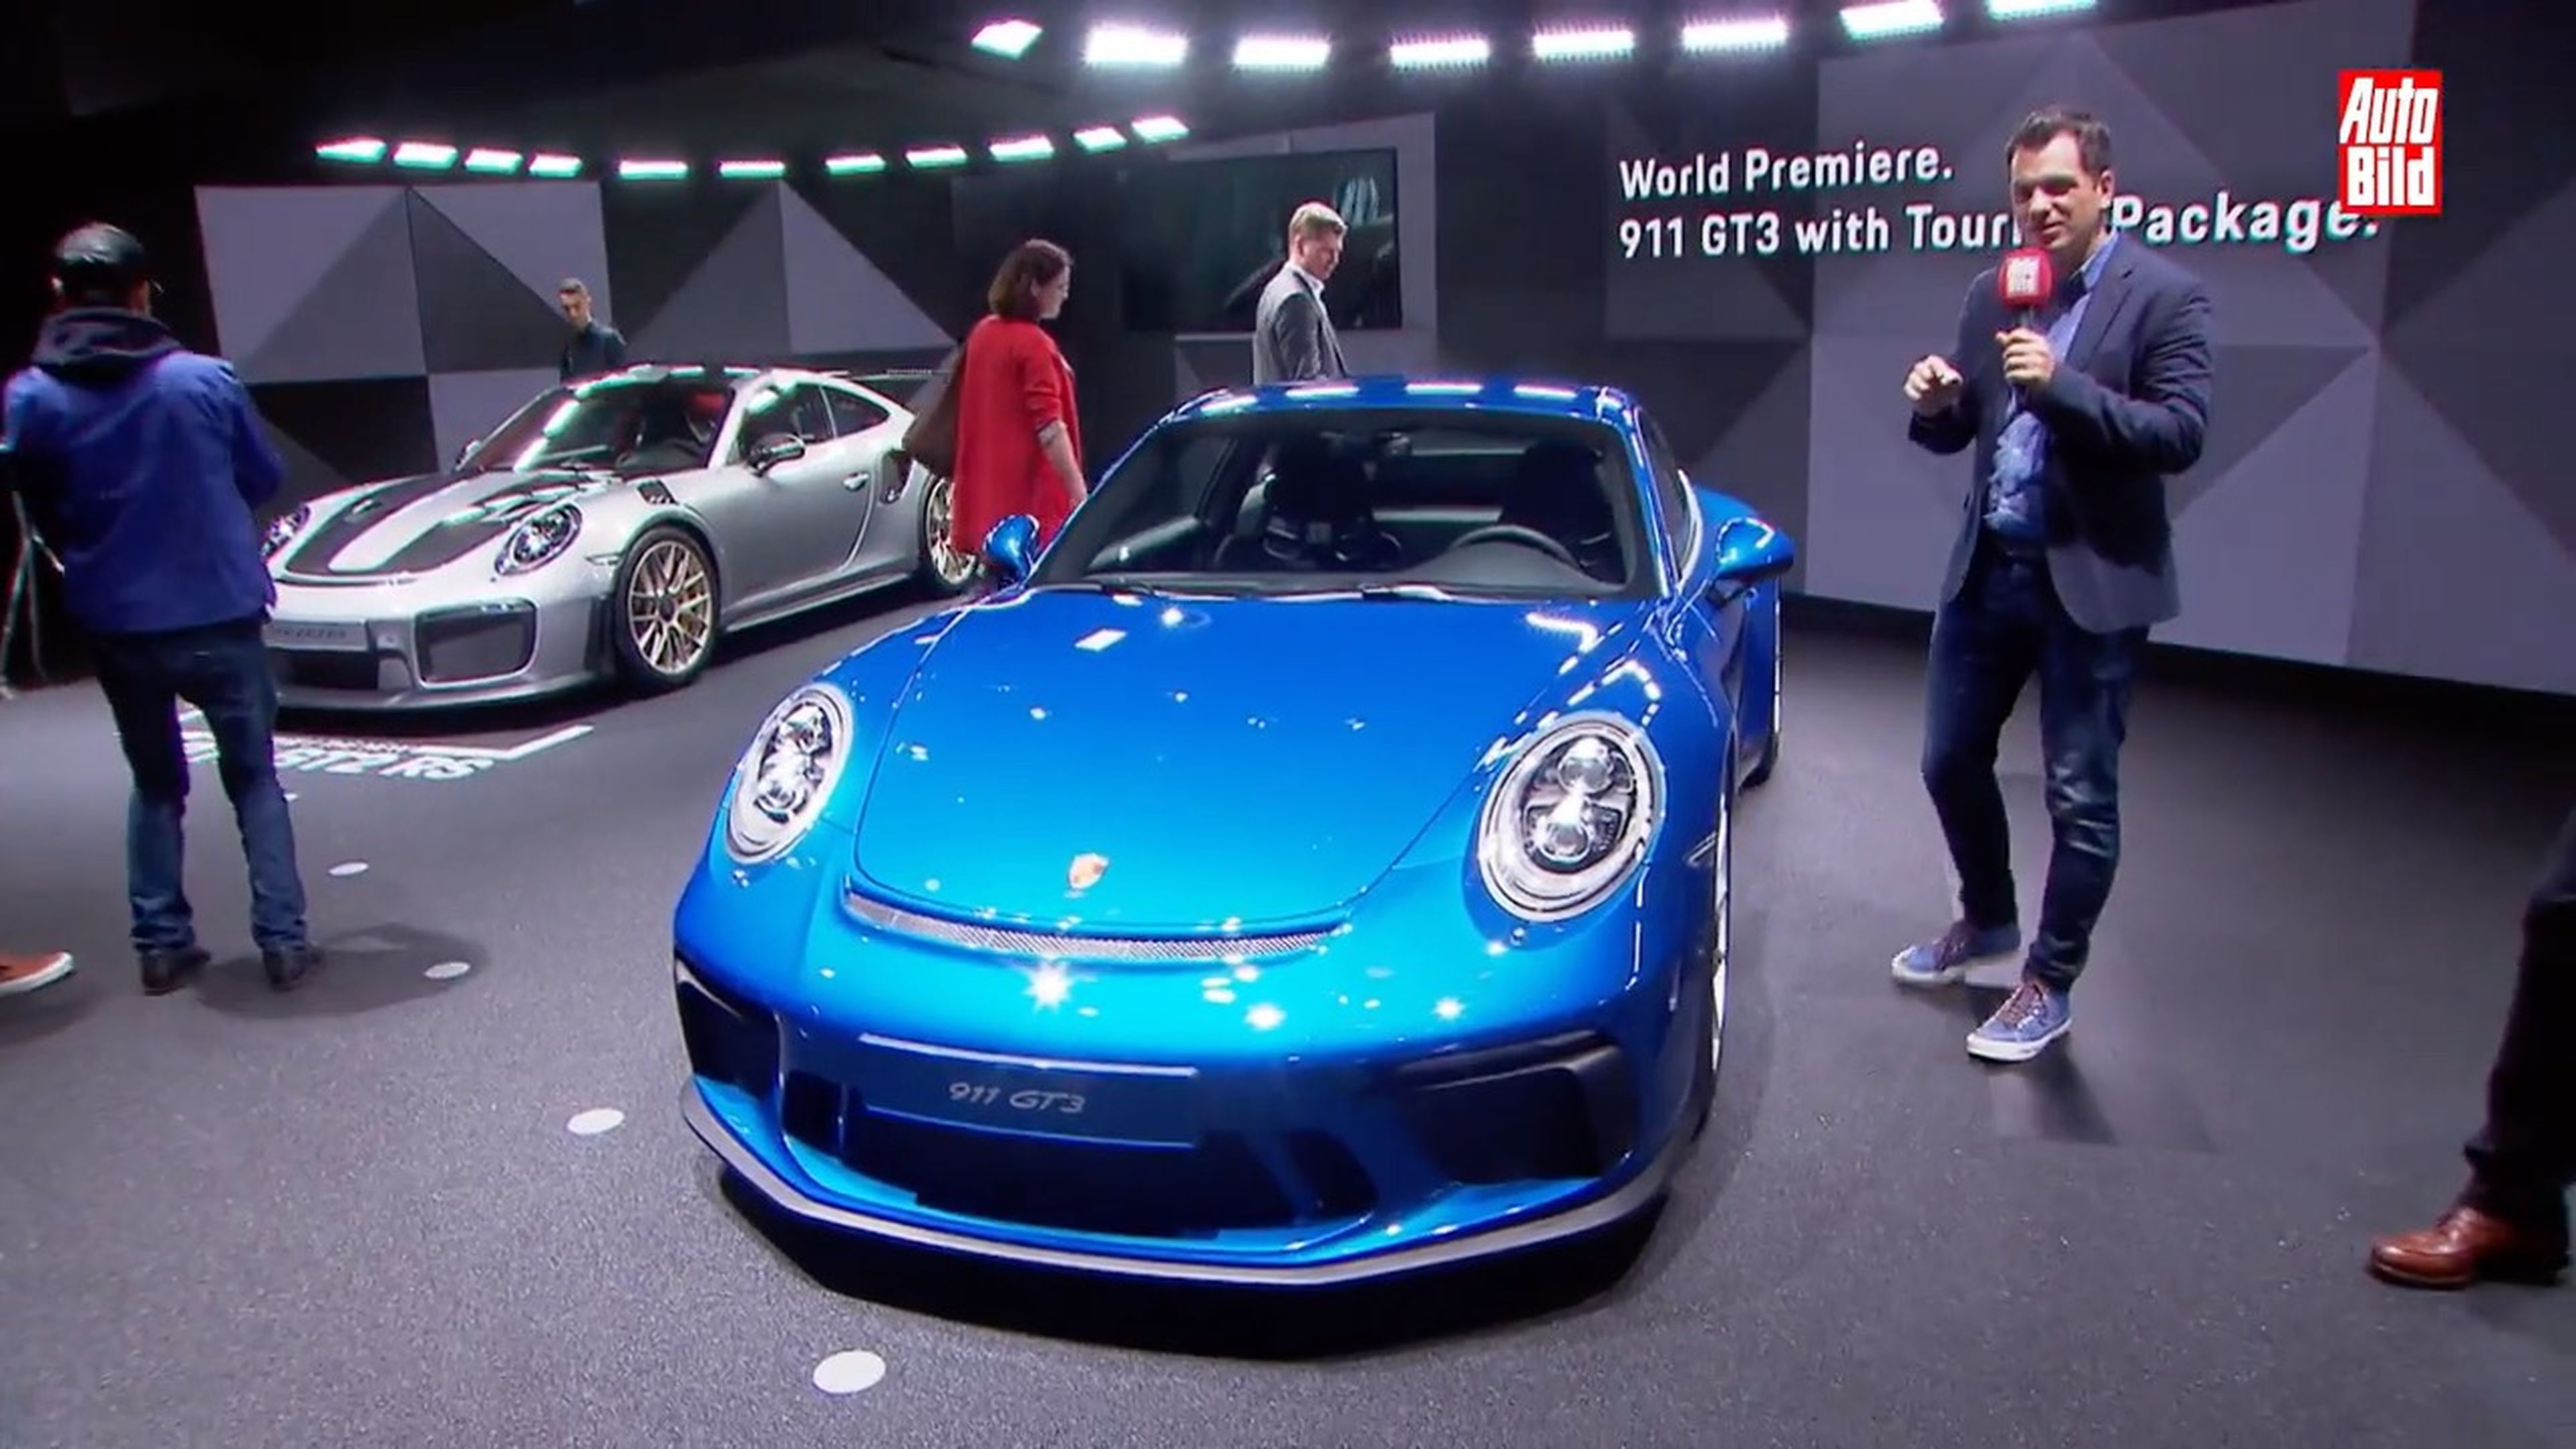 VÍDEO: Así es el Porsche 911 GT3 Touring Package. ¡Sin alerón!